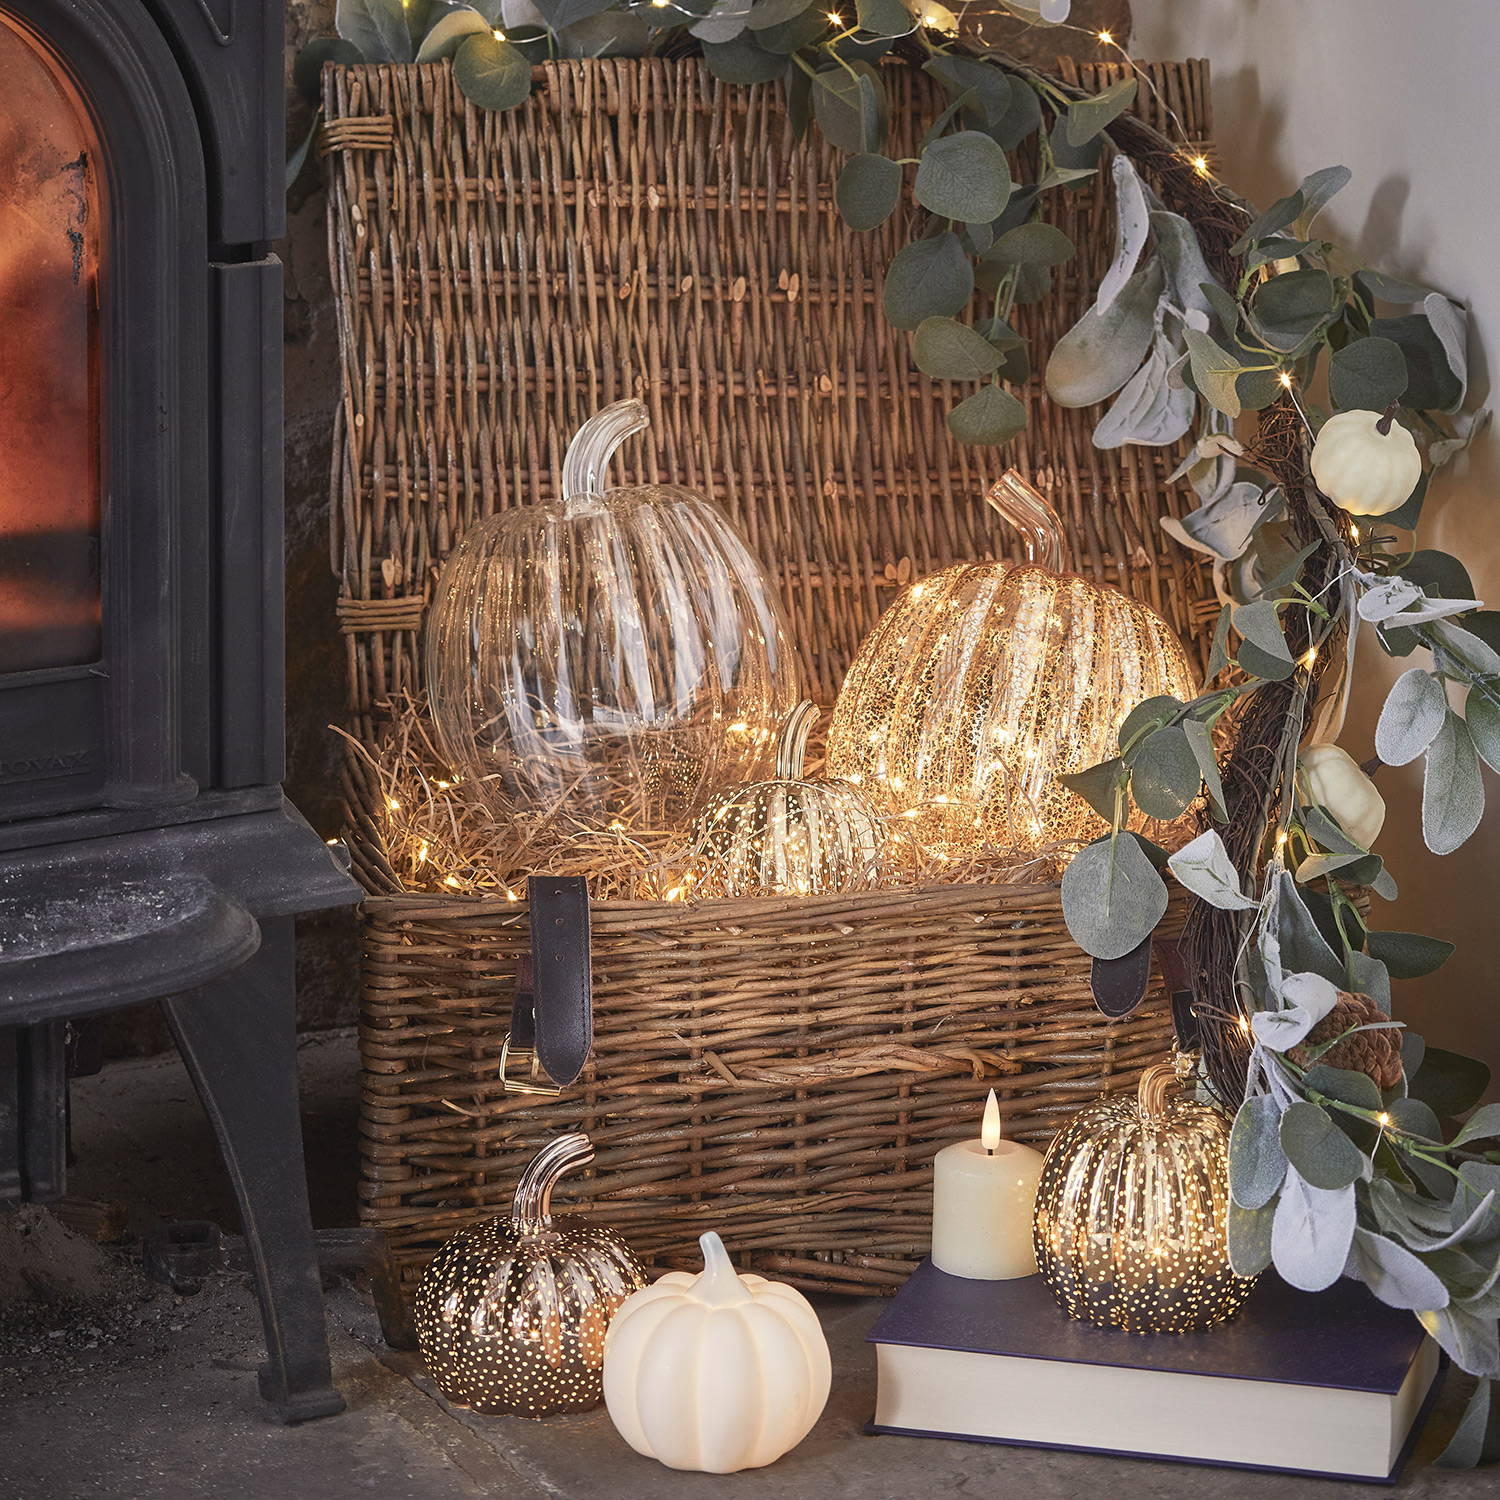  A wicker basket with a green autumn garland and 5 pumpkin lights nestled inside.